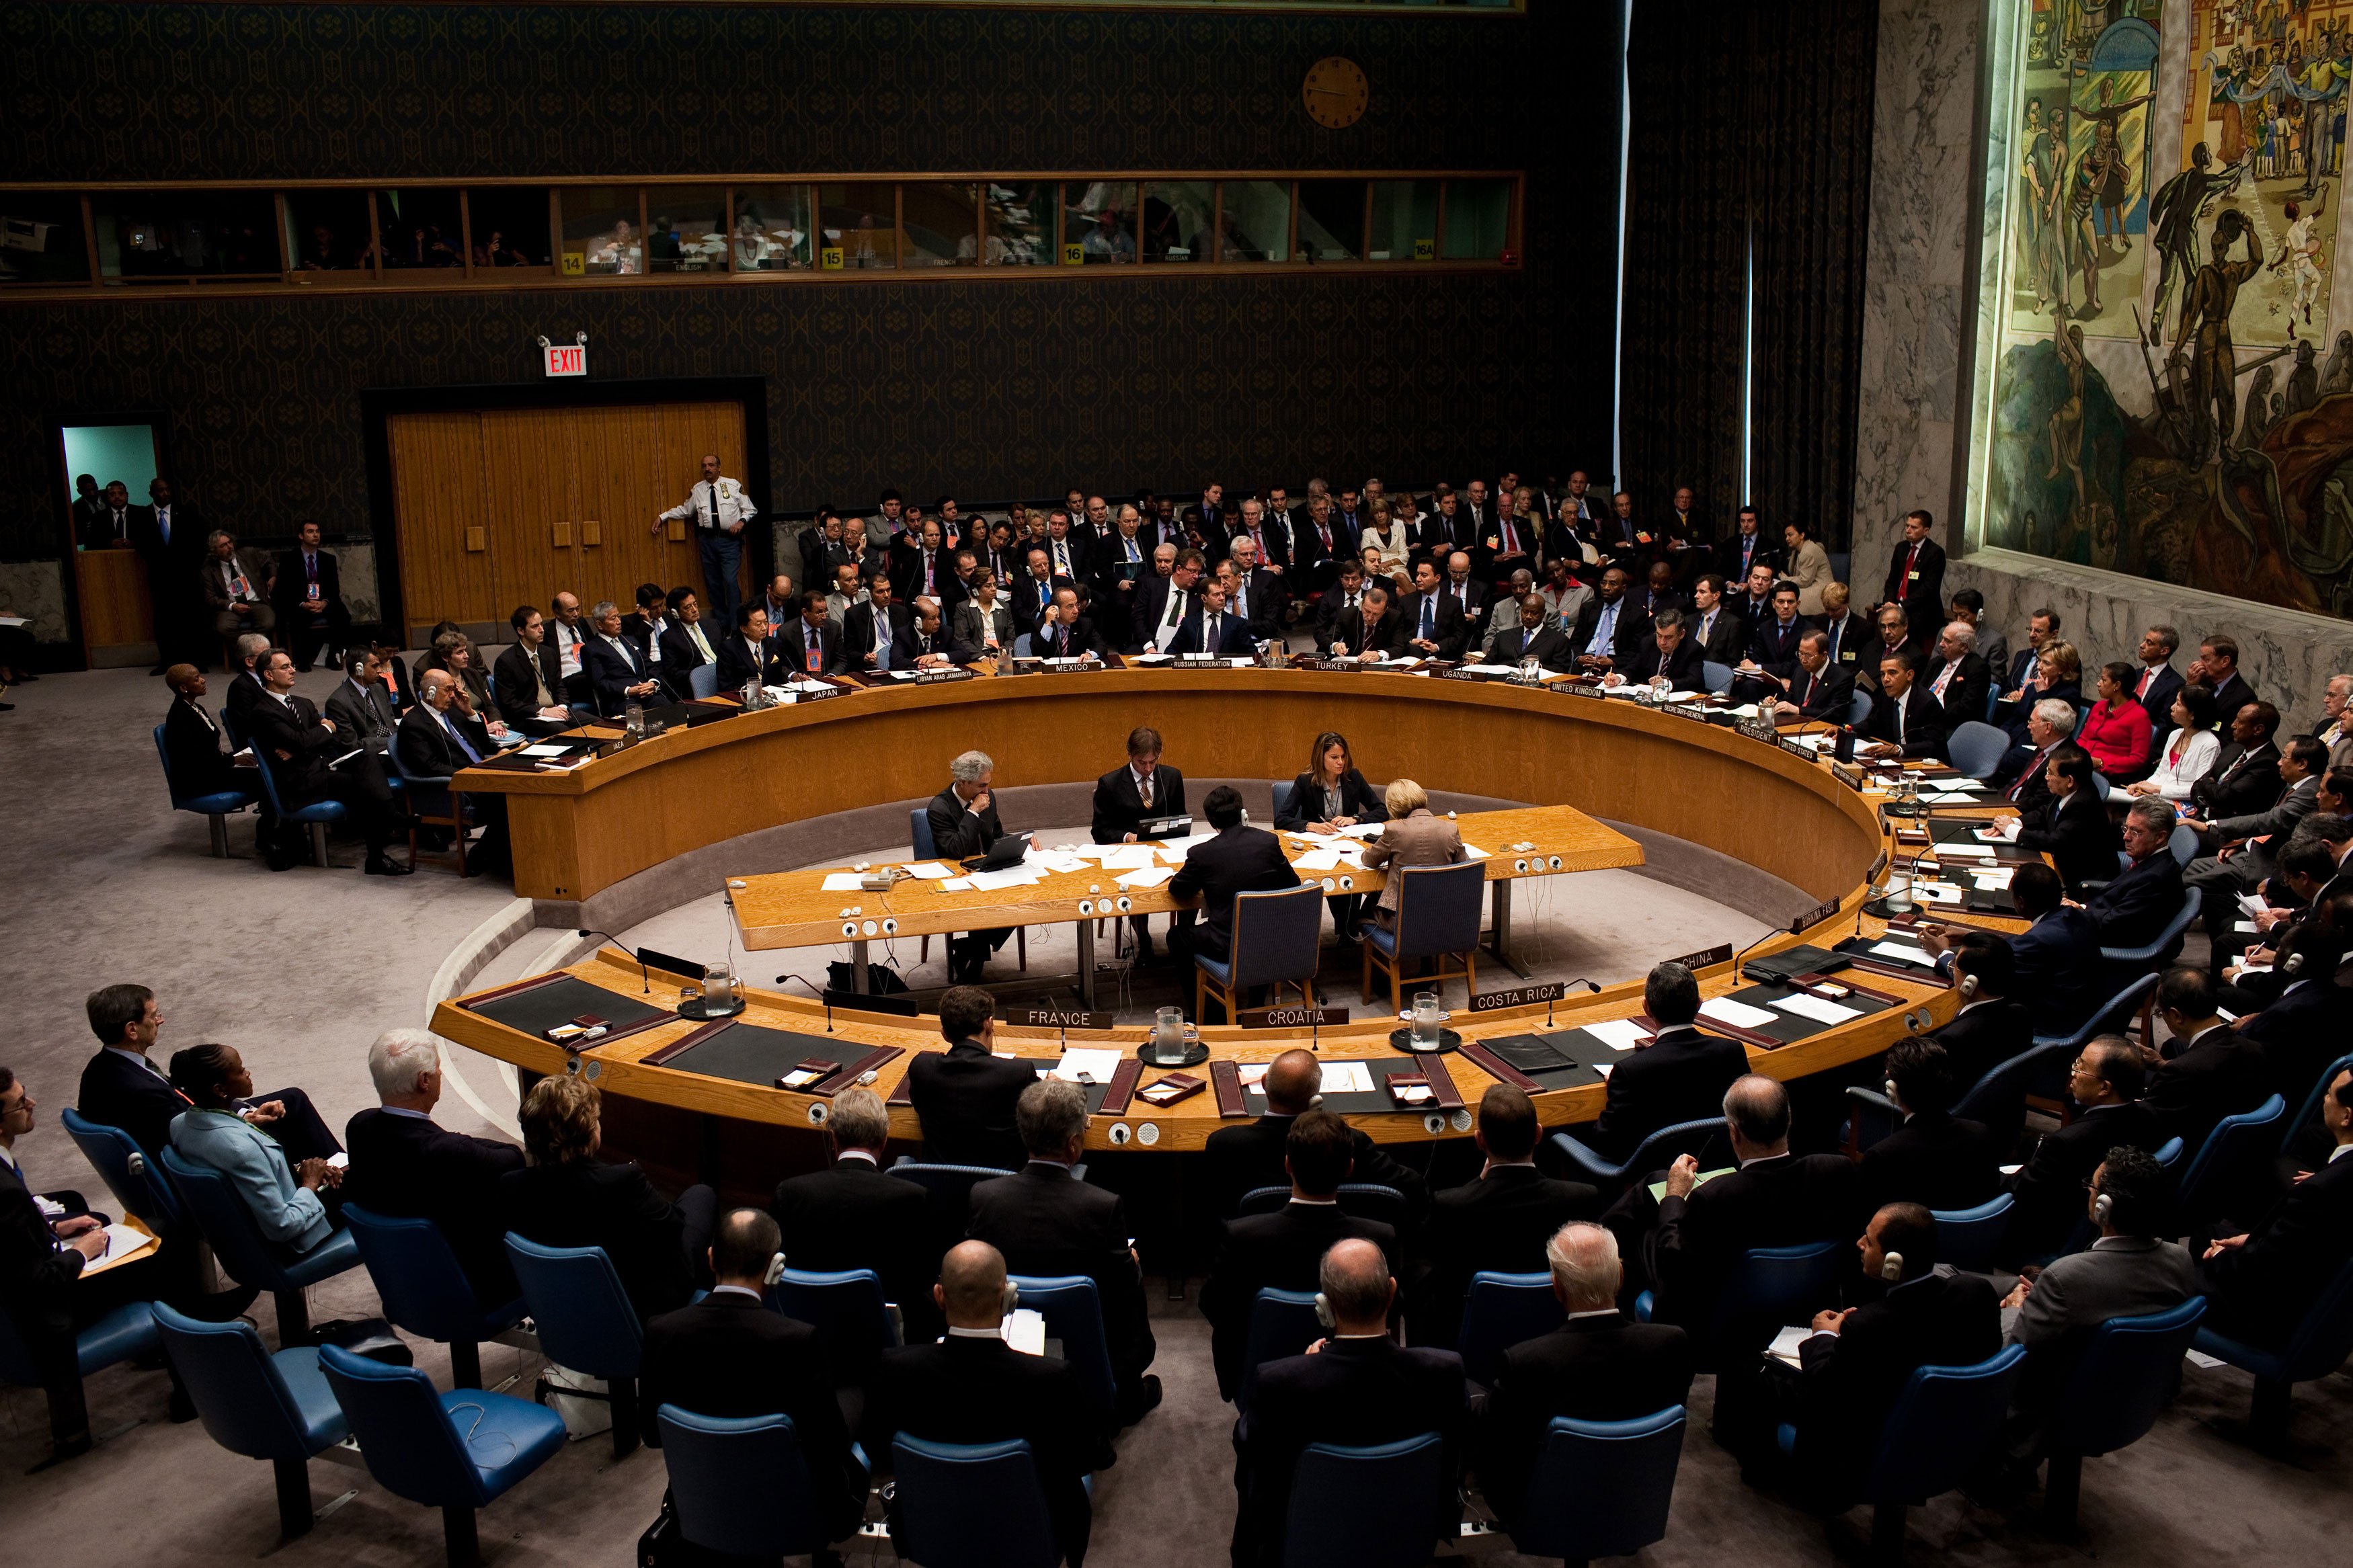 Έκτακτη συνεδρίαση του Συμβουλίου Ασφαλείας του ΟΗΕ για τις εξελίξεις στο Ισραήλ